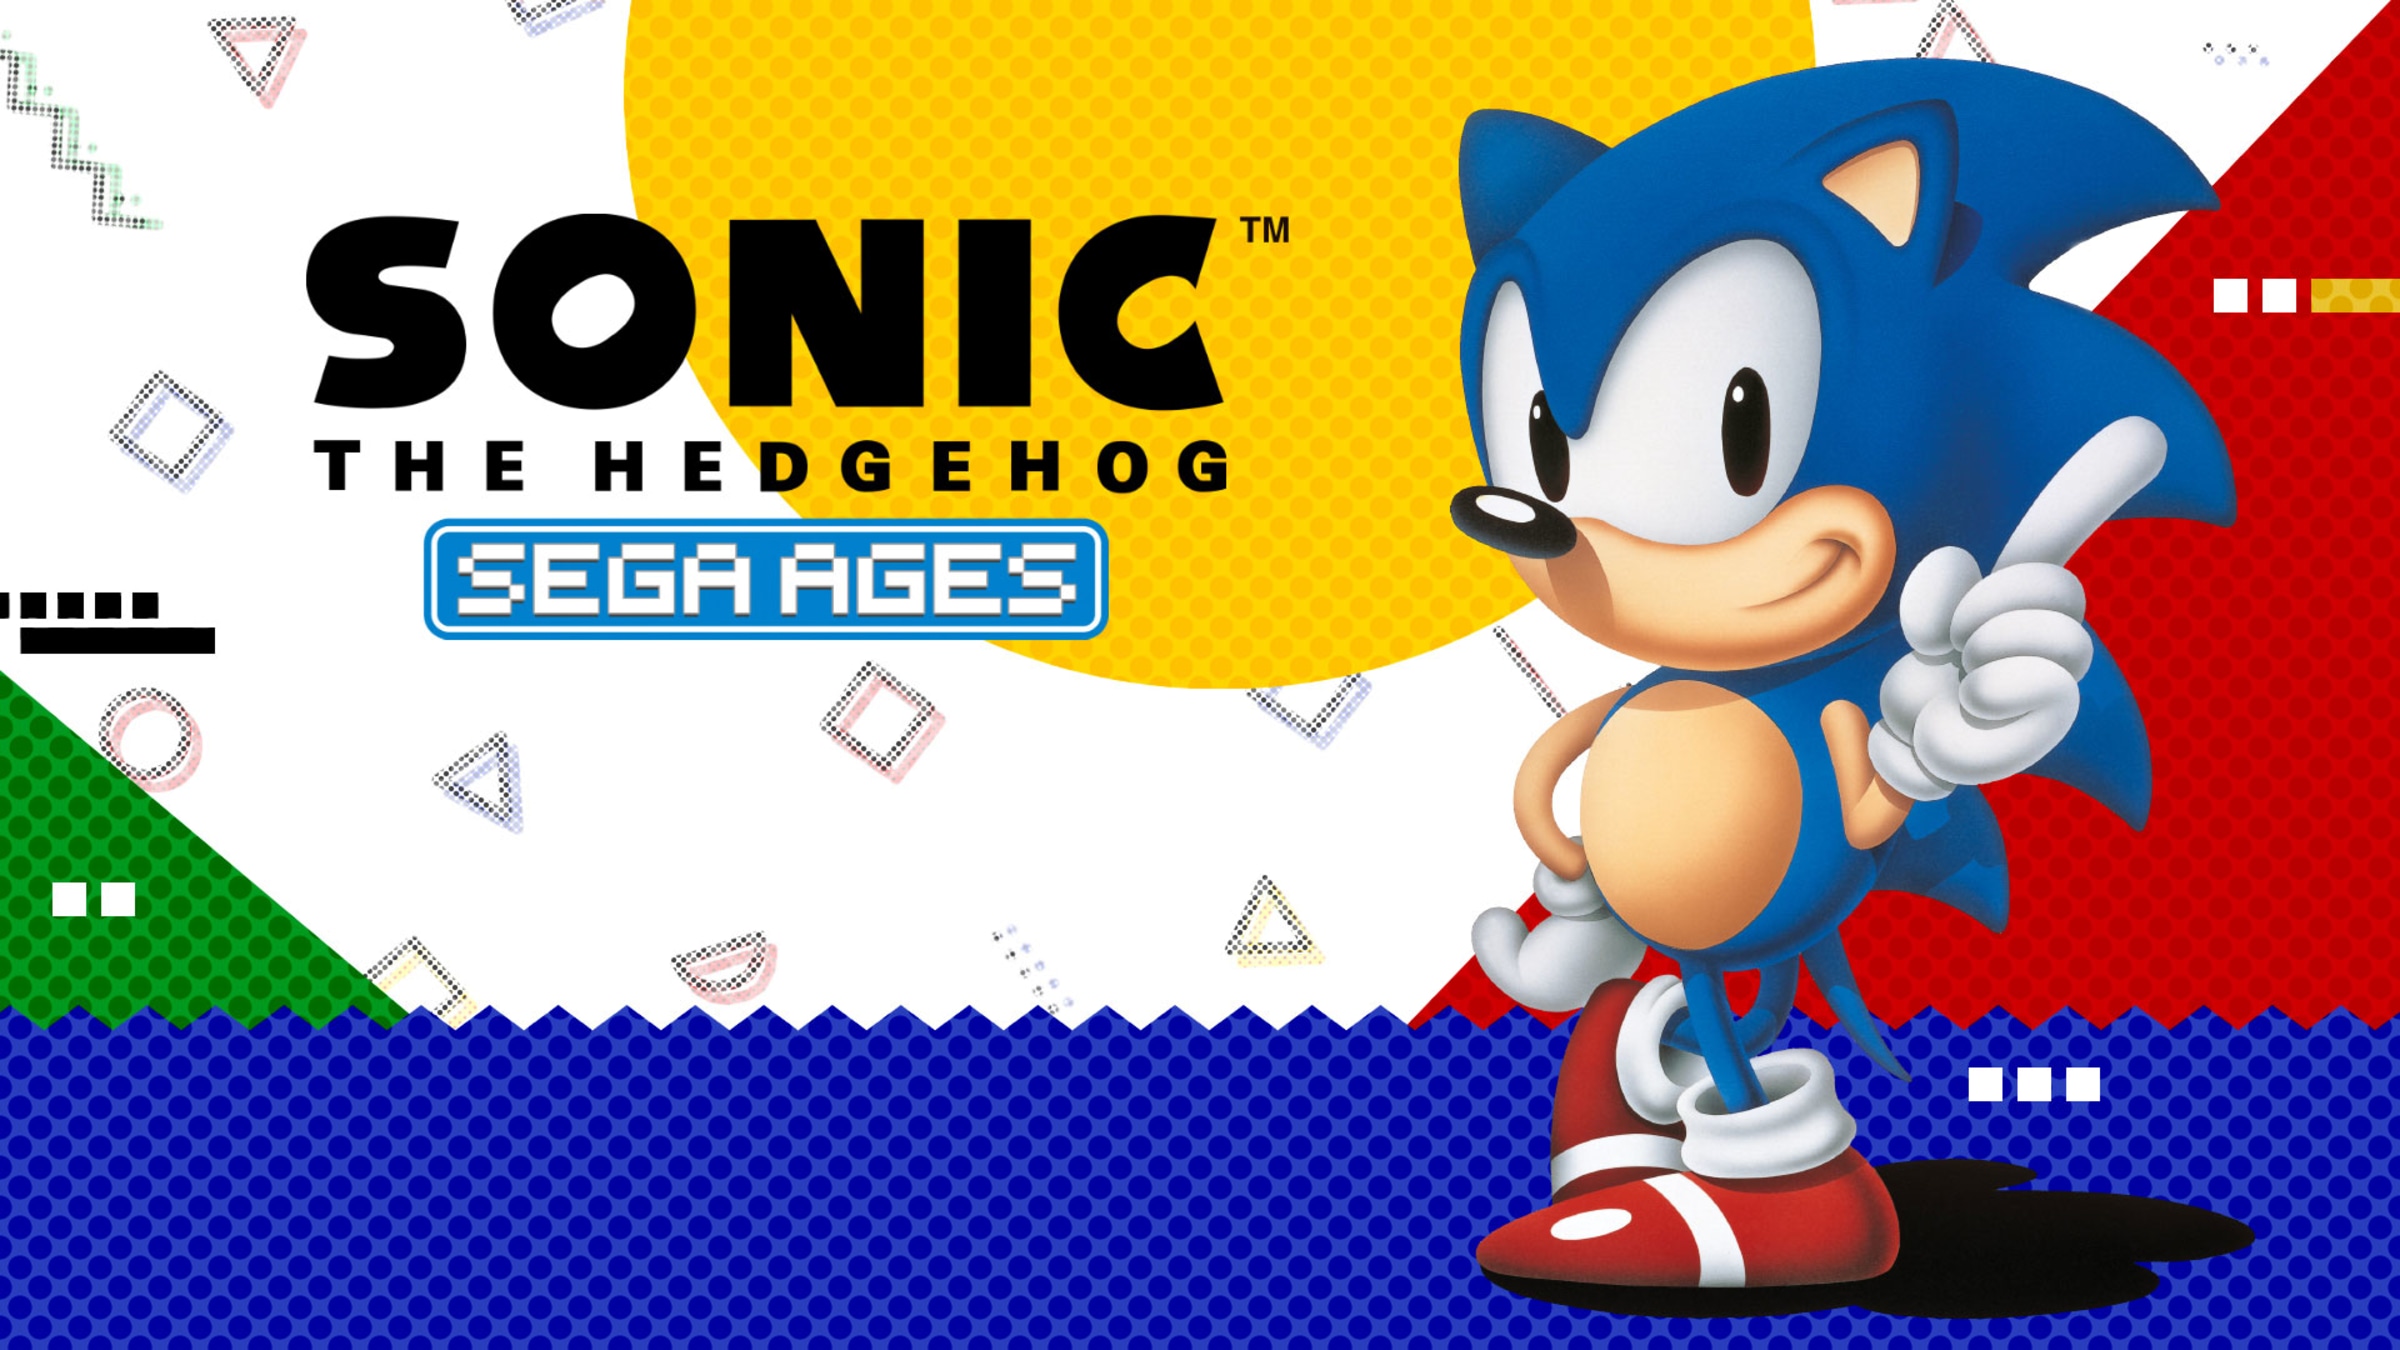 SEGA Sonic The Hedgehog for Nintendo Switch - Nintendo Official Site